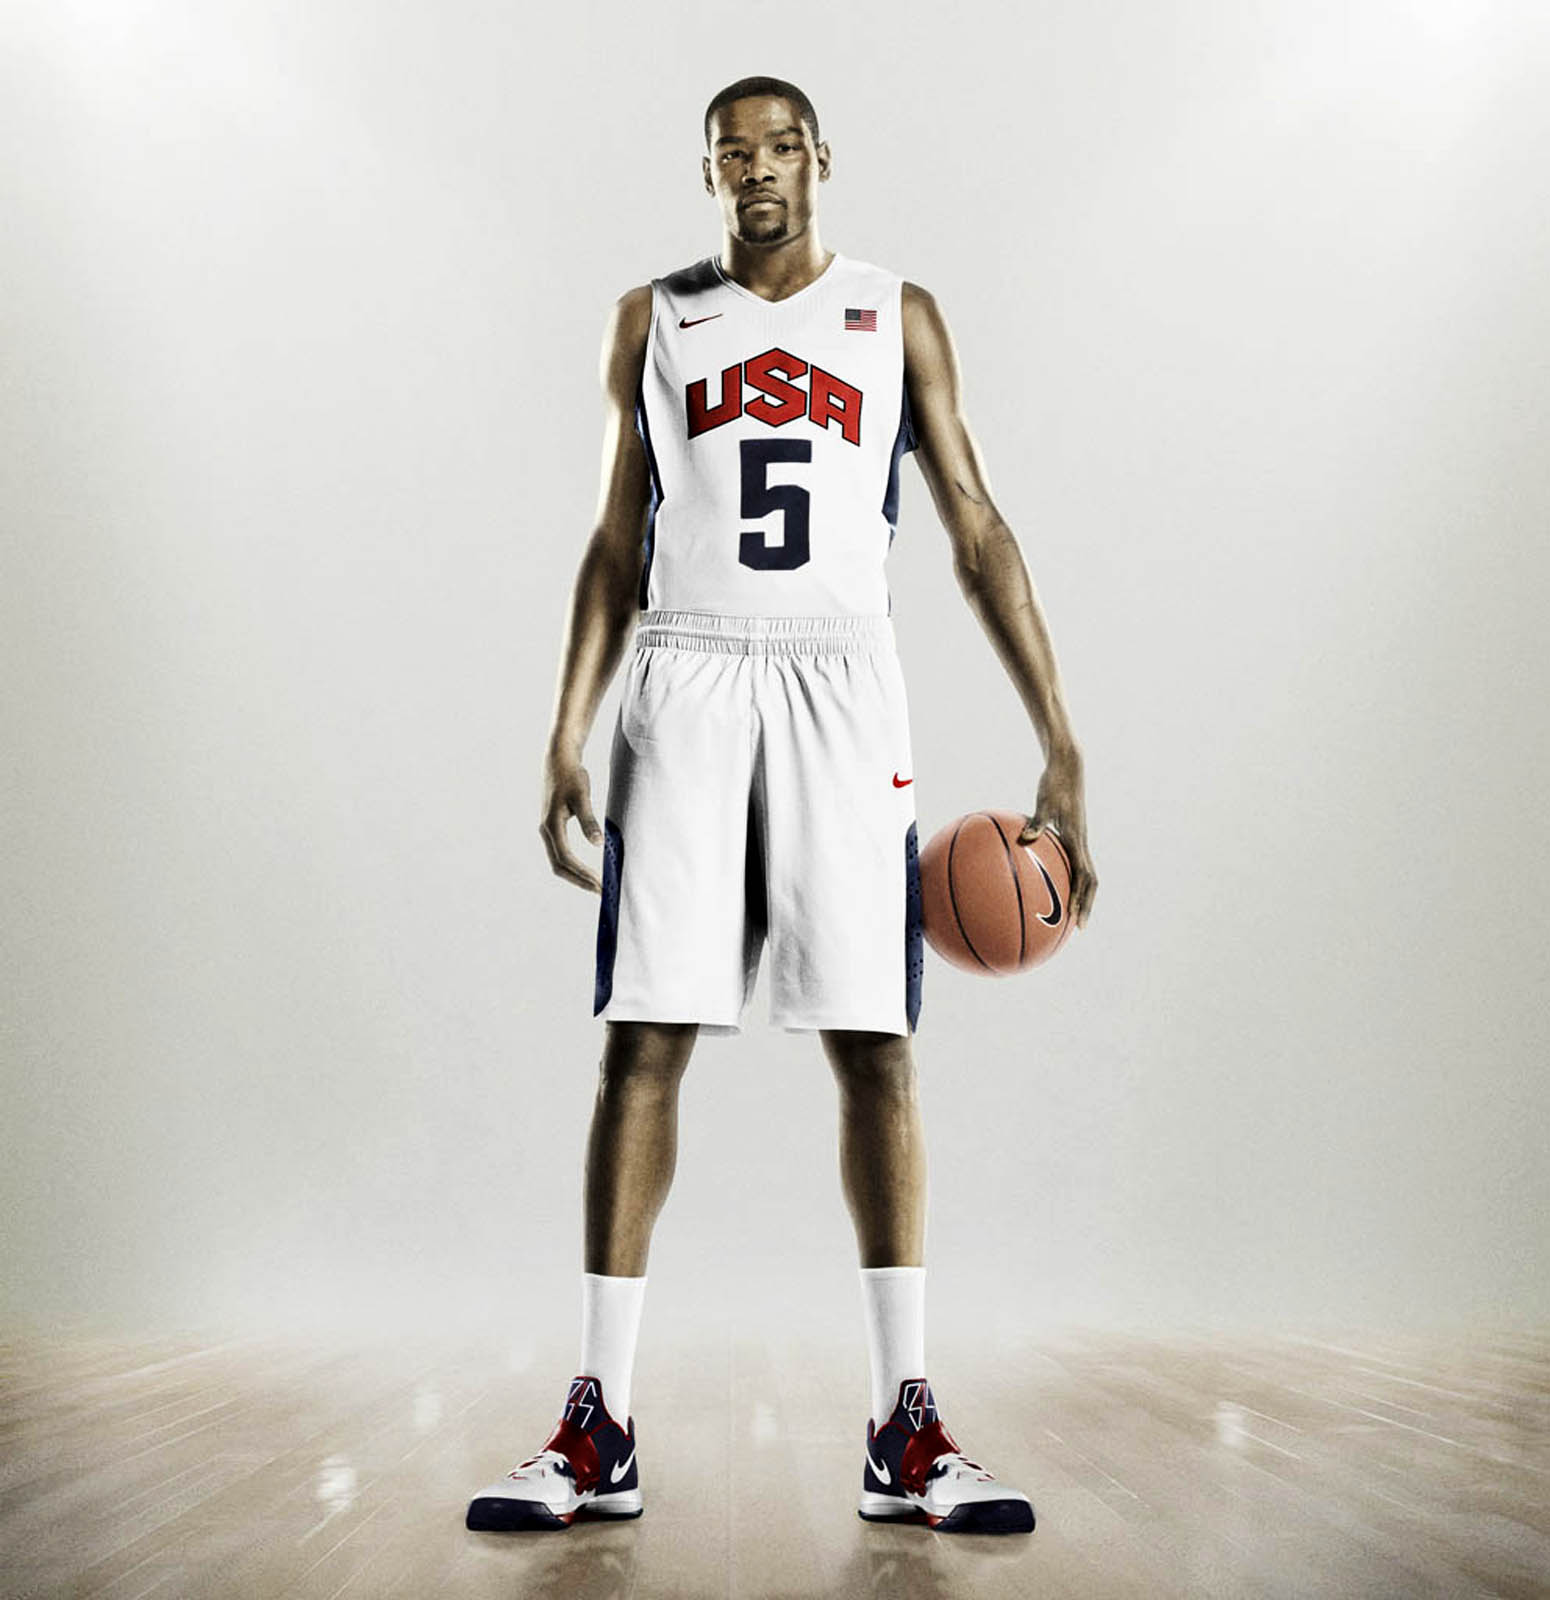 27 Usa Basketball Team Wallpaper On Wallpapersafari